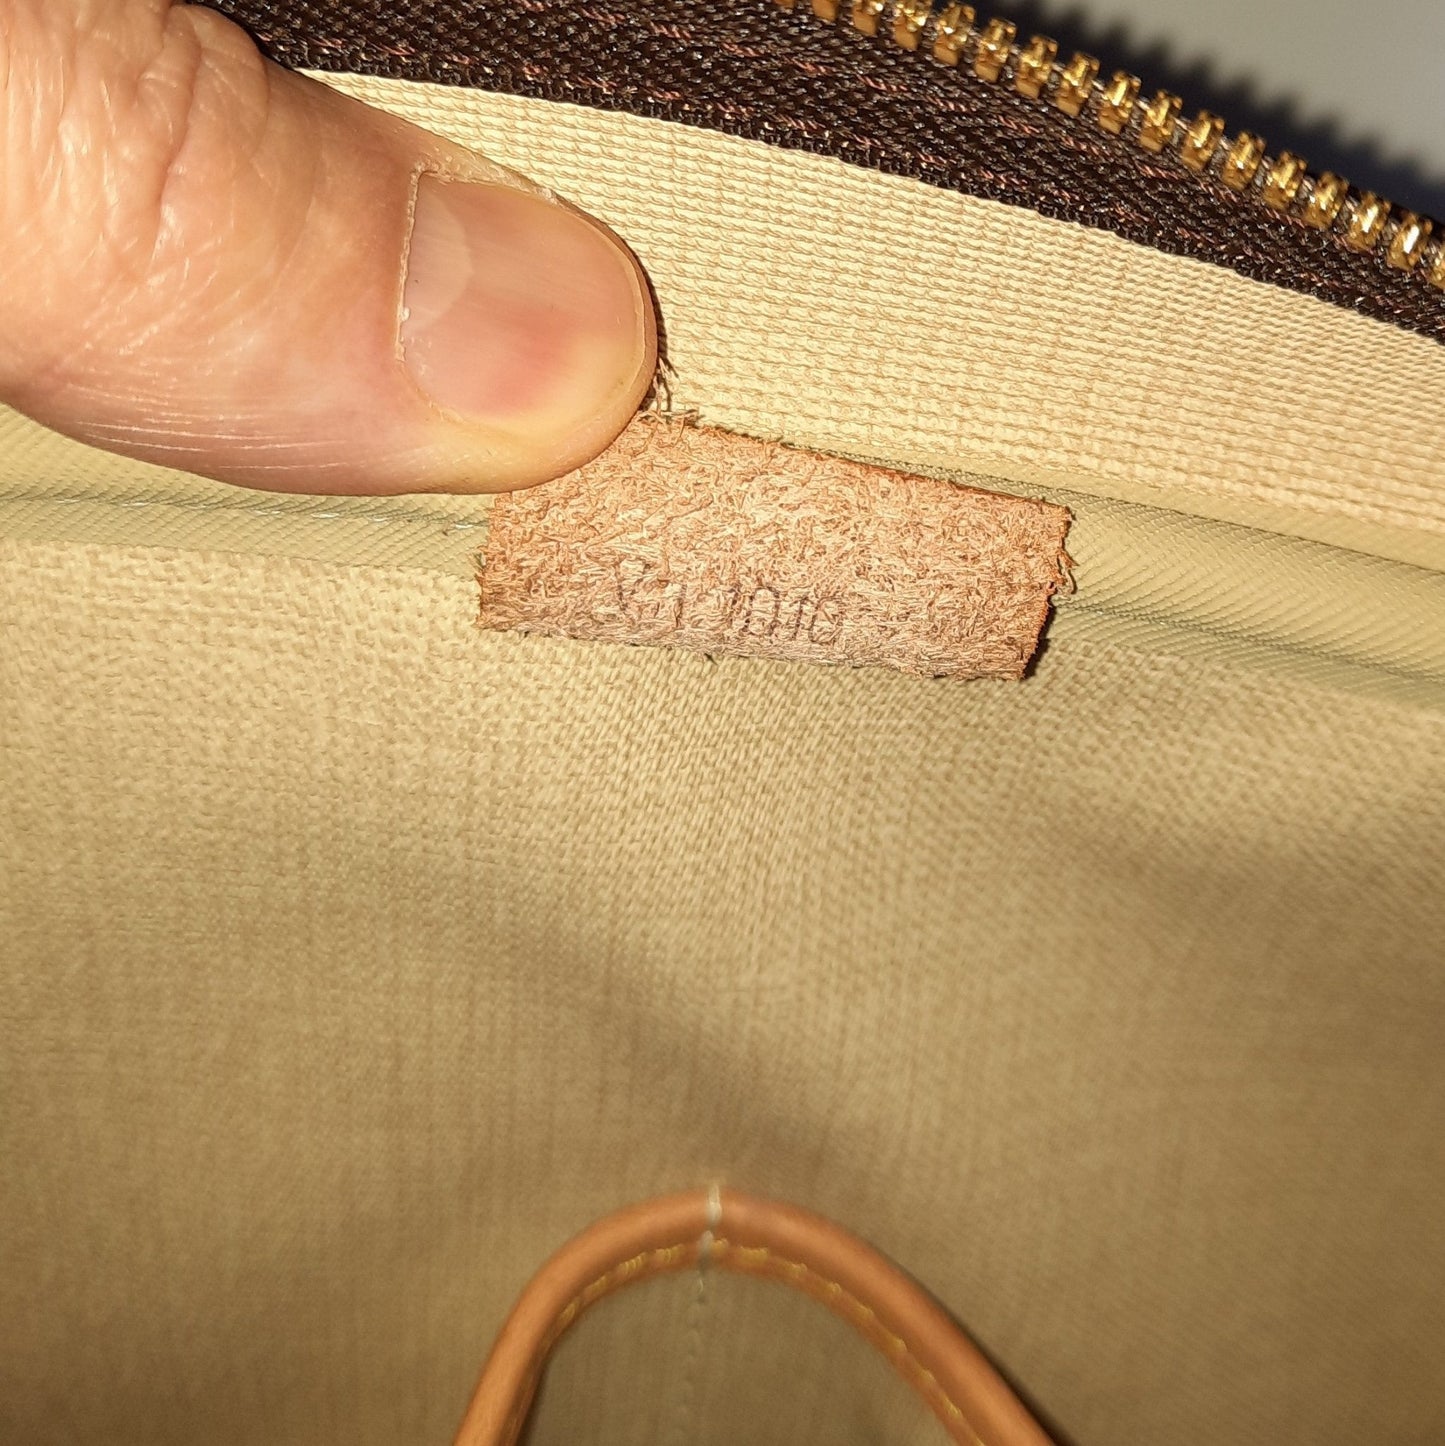 Authentic Louis Vuitton Monogram Deauville Hand Bag Purse M47270 LV K0481